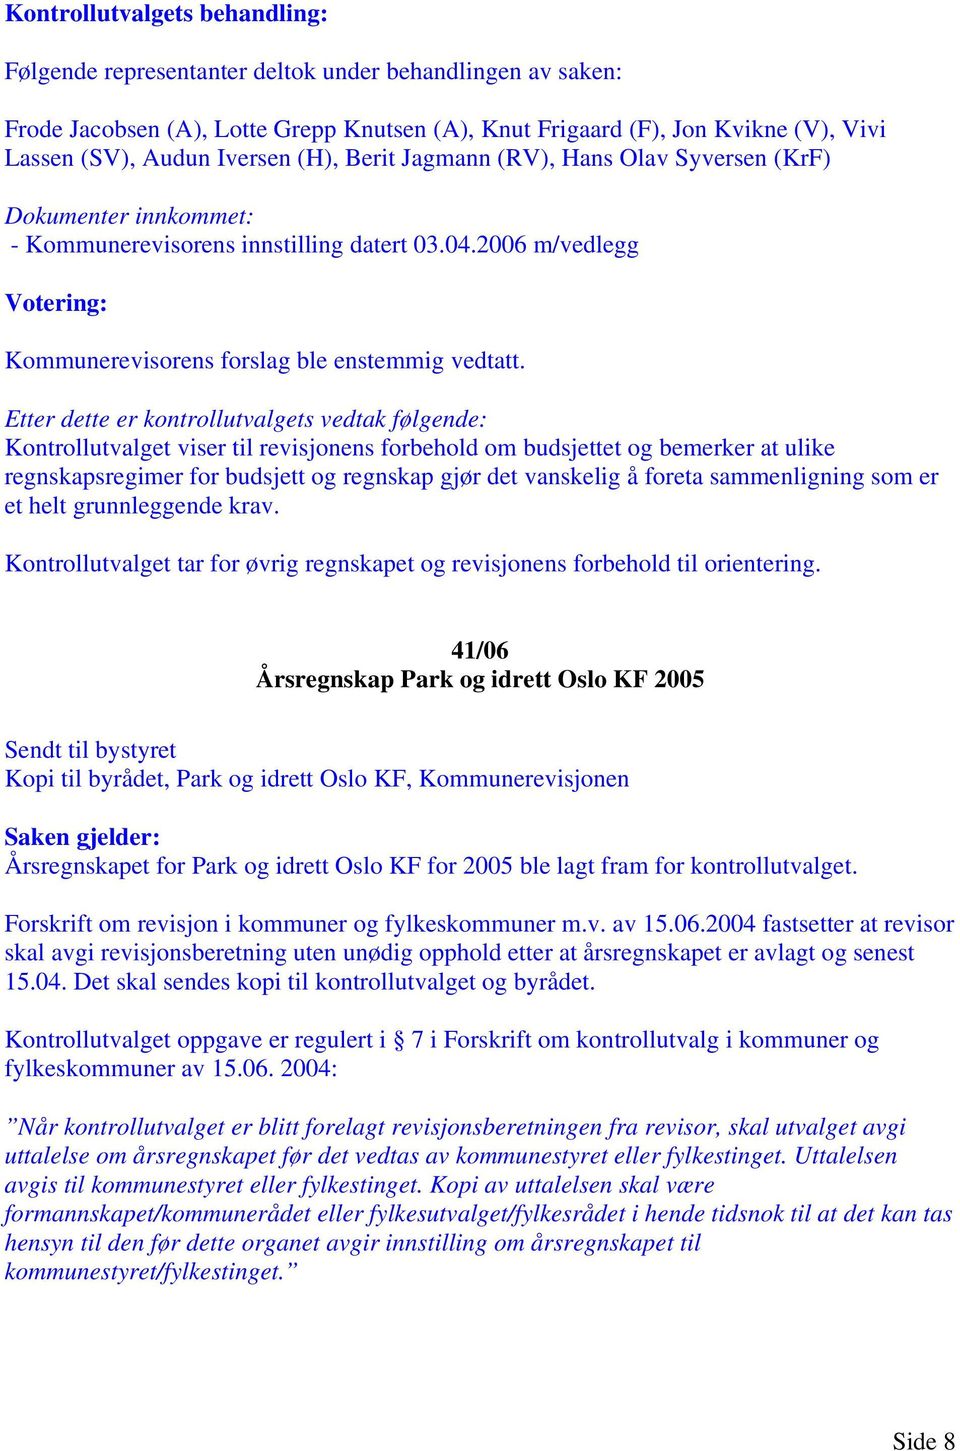 41/06 Årsregnskap Park og idrett Oslo KF 2005 Kopi til byrådet, Park og idrett Oslo KF, Kommunerevisjonen Årsregnskapet for Park og idrett Oslo KF for 2005 ble lagt fram for kontrollutvalget.